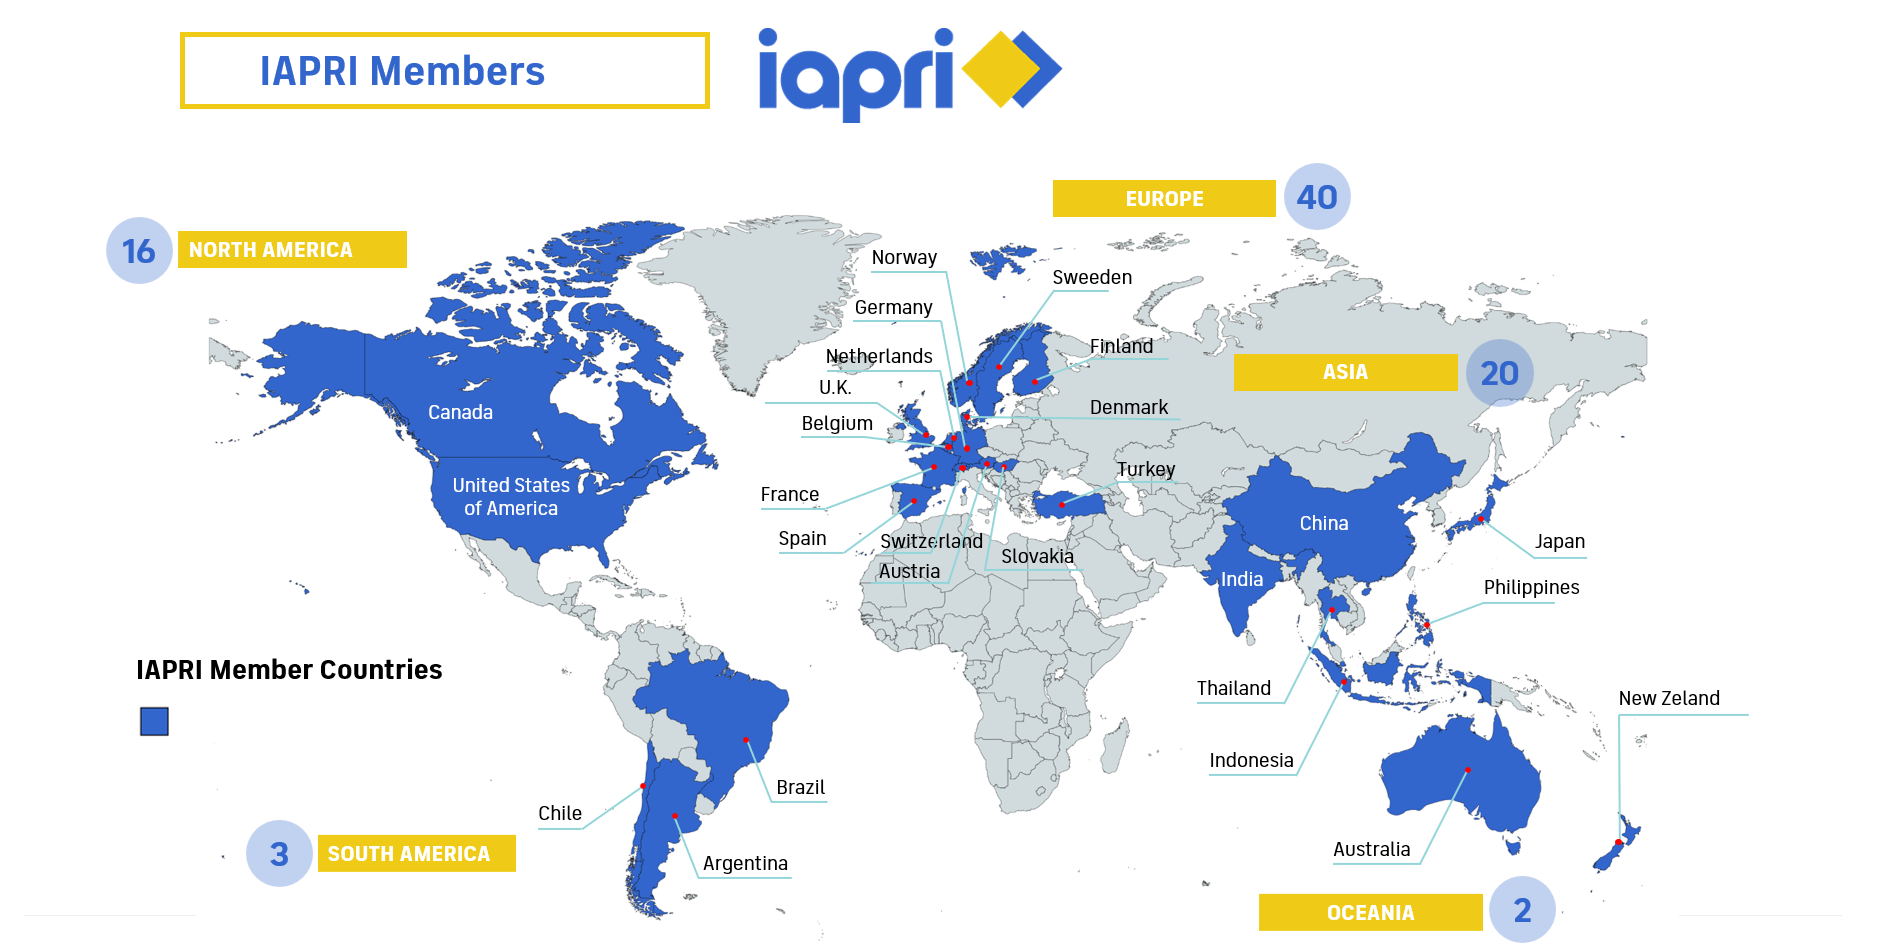 iapri members countries.png